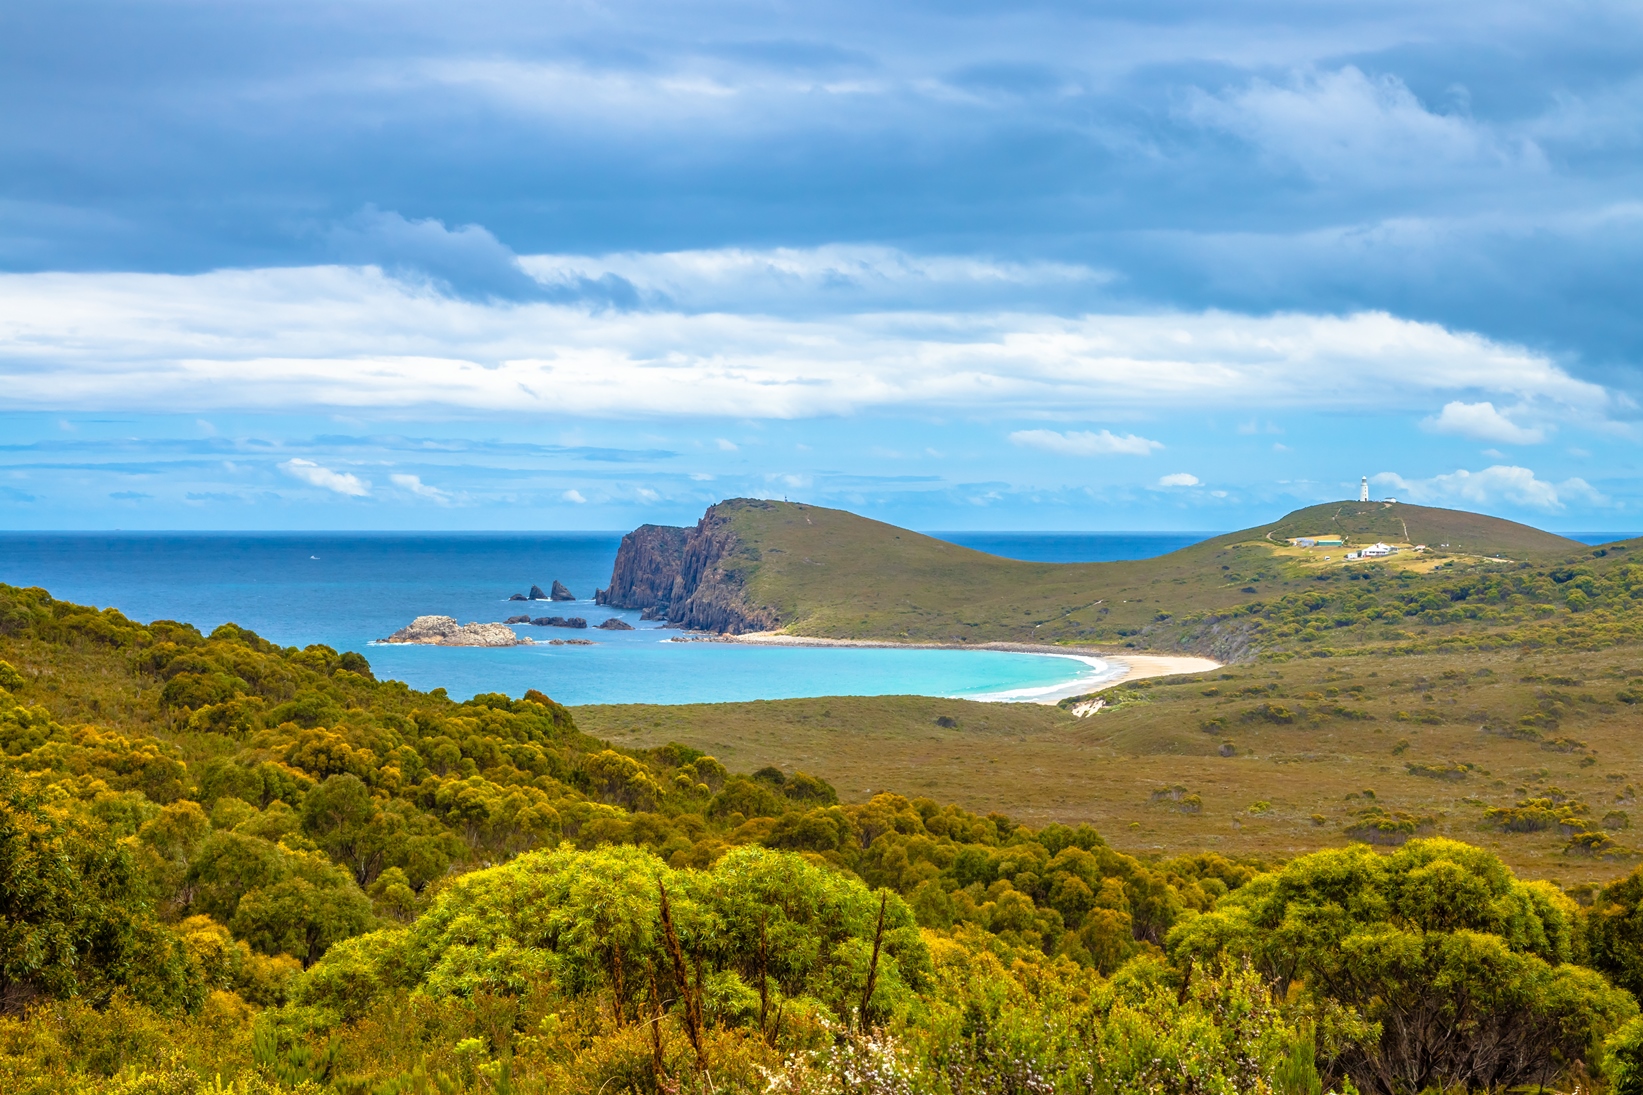 Cape Bruny in Tasmania